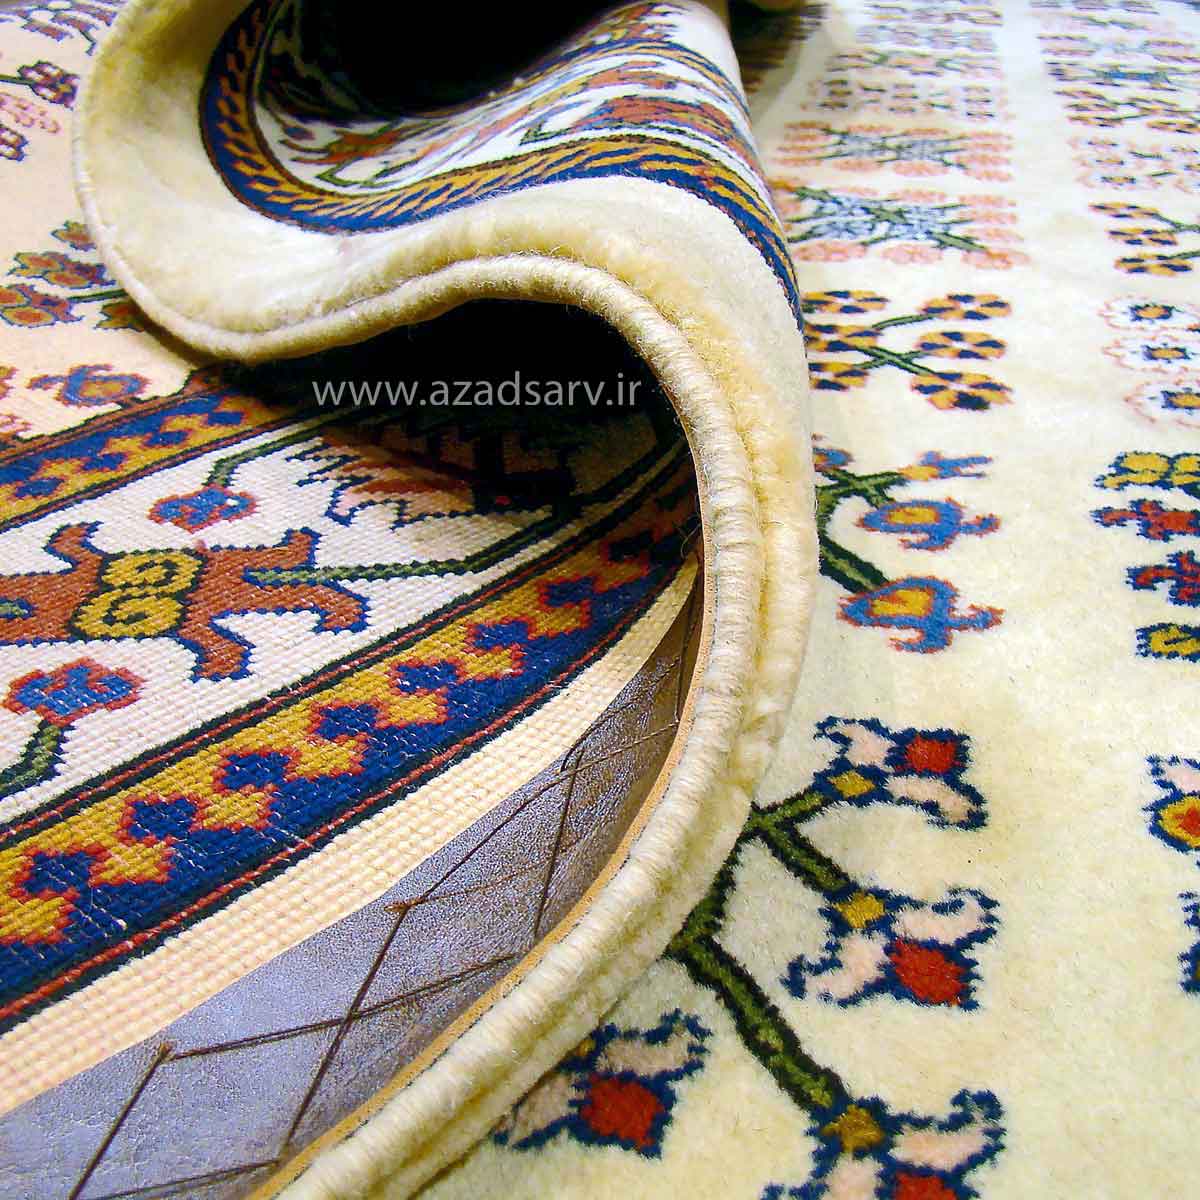 فرش دستباف هفت متری آزادسرو نقشه جوشقان azadsarv carpet